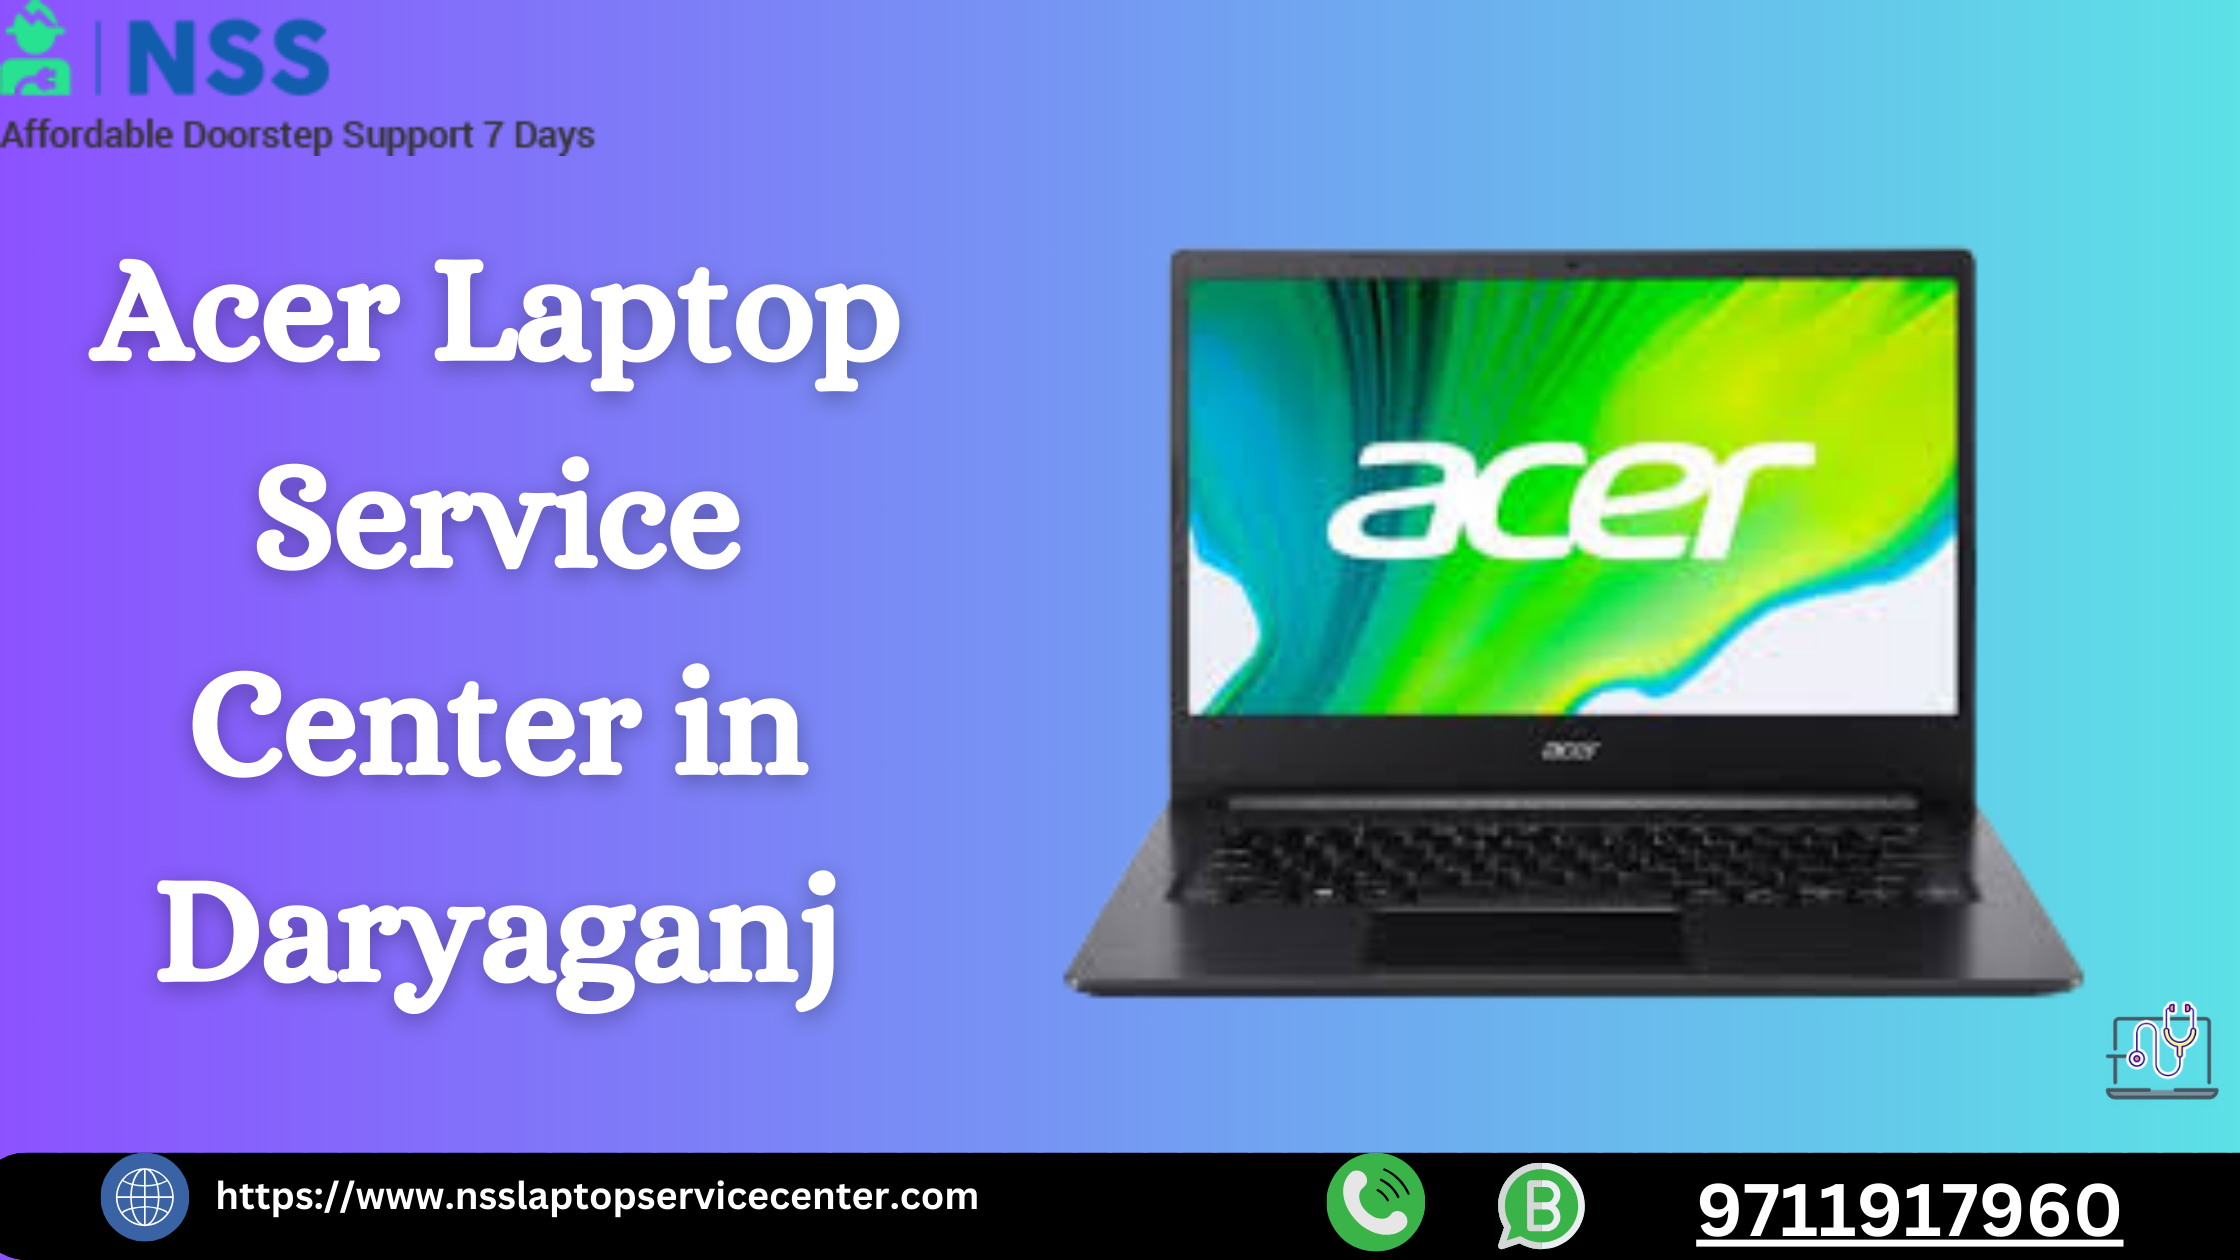 Acer Laptop Service Center in Darya Ganj, Delhi